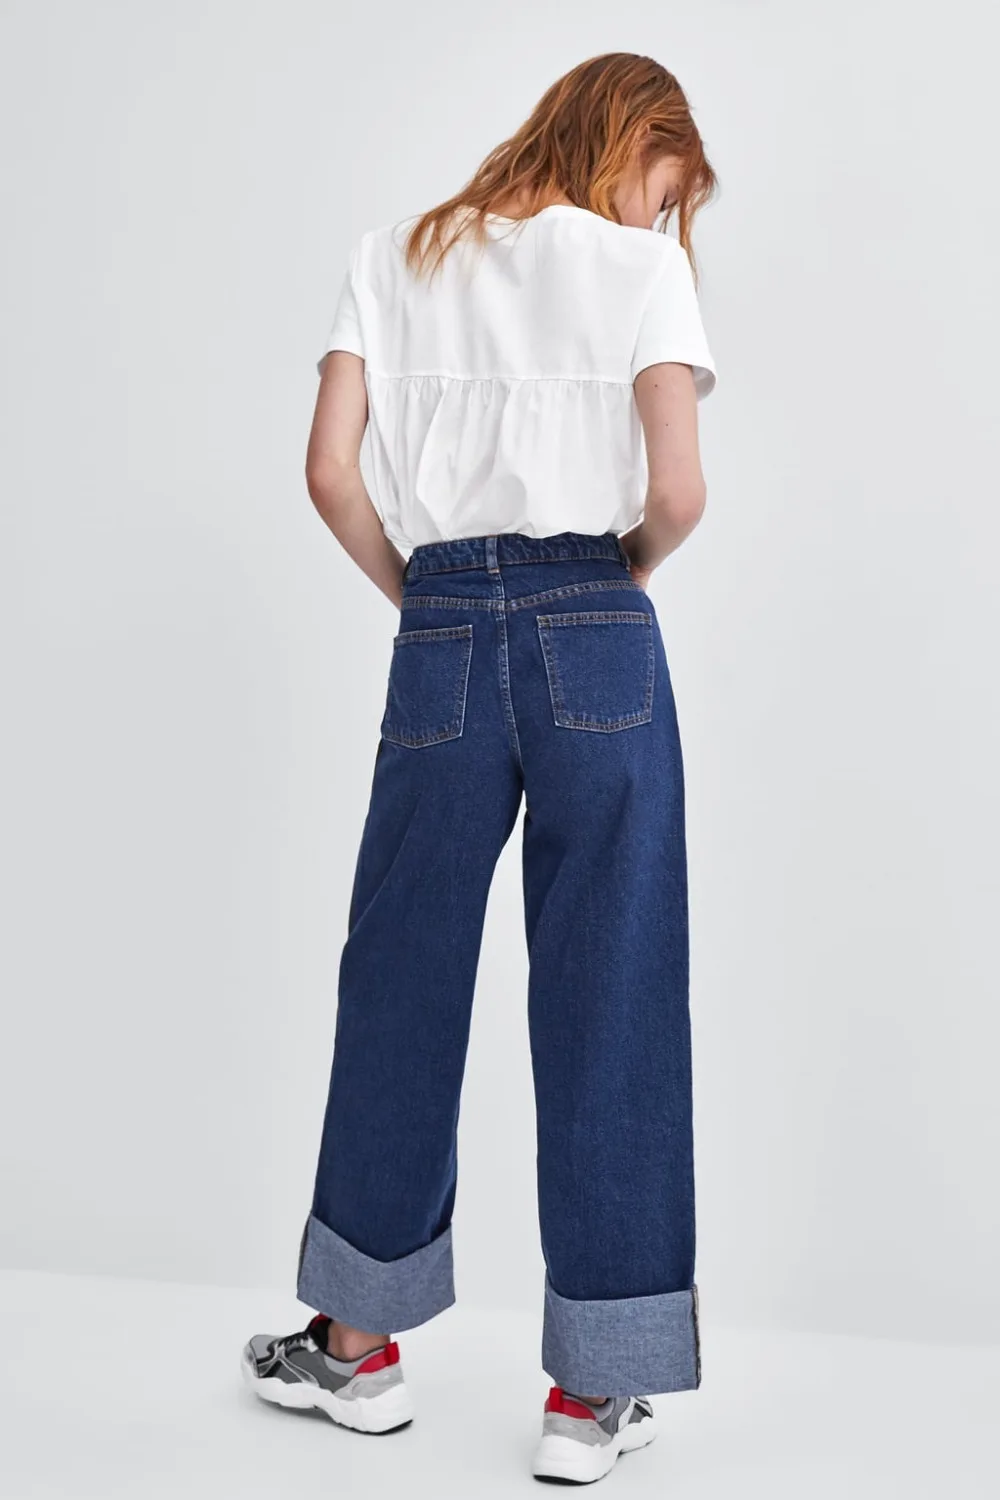 Увядшие джинсы для женщин, уличные винтажные джинсы для мам, вареные, закатанные манжеты, широкие брюки для женщин, высокая талия, свободные джинсы размера плюс